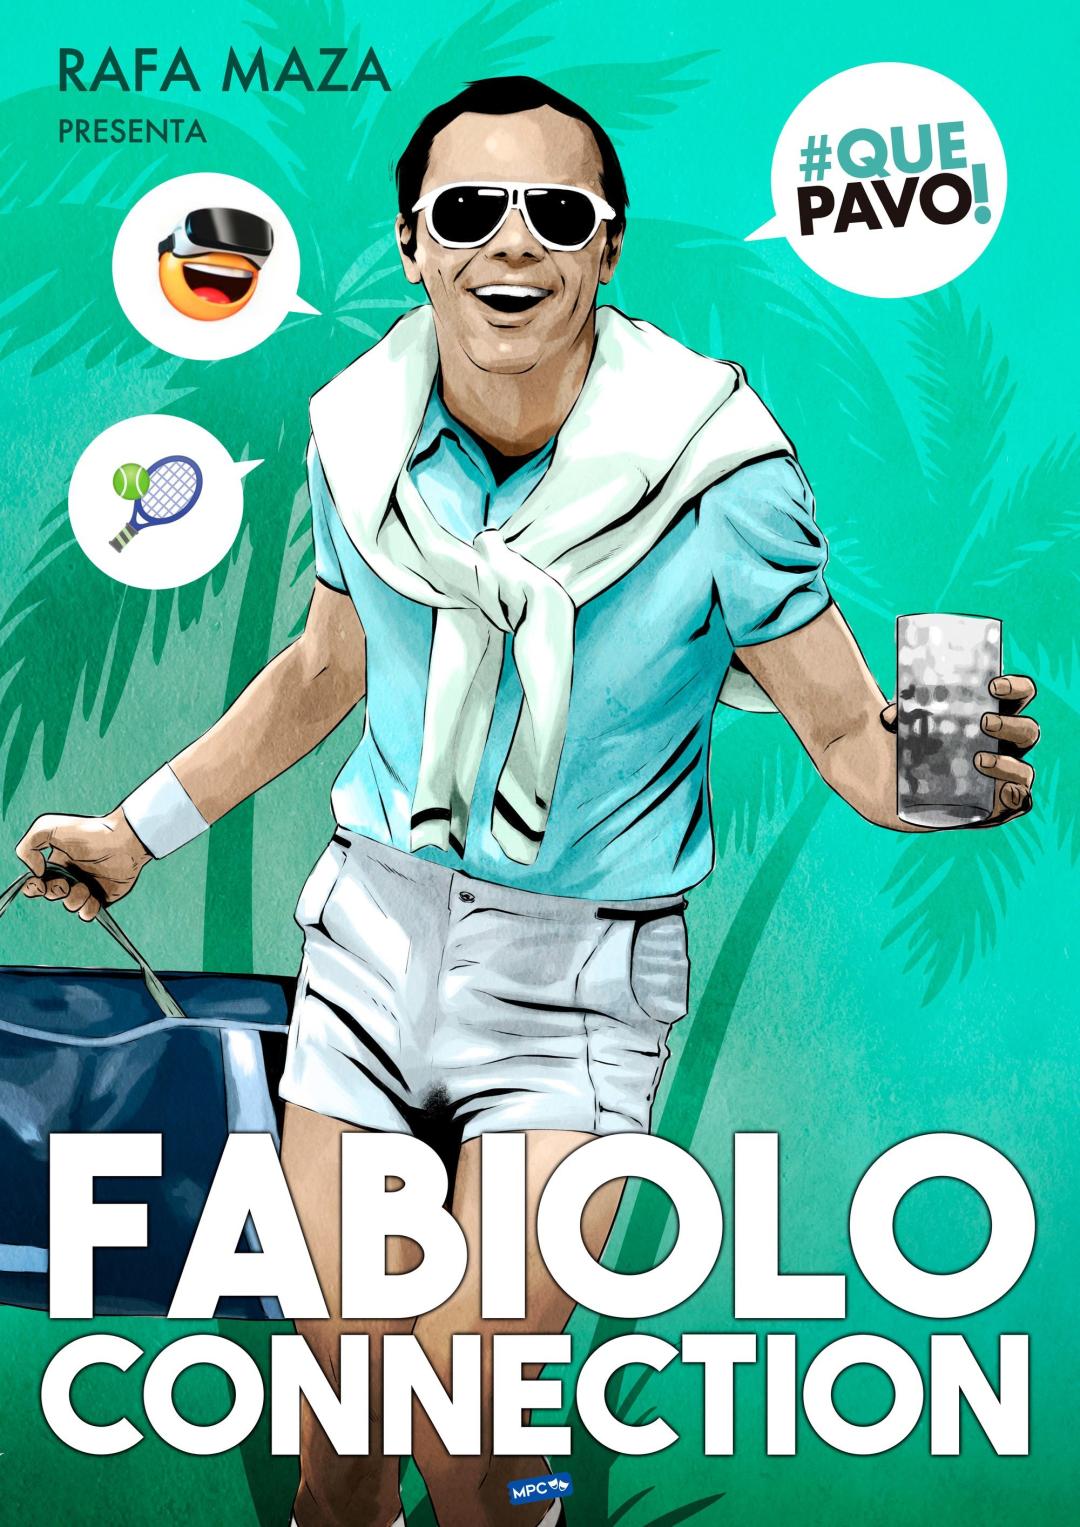 imagen del espectáculo - Fabiolo Connection